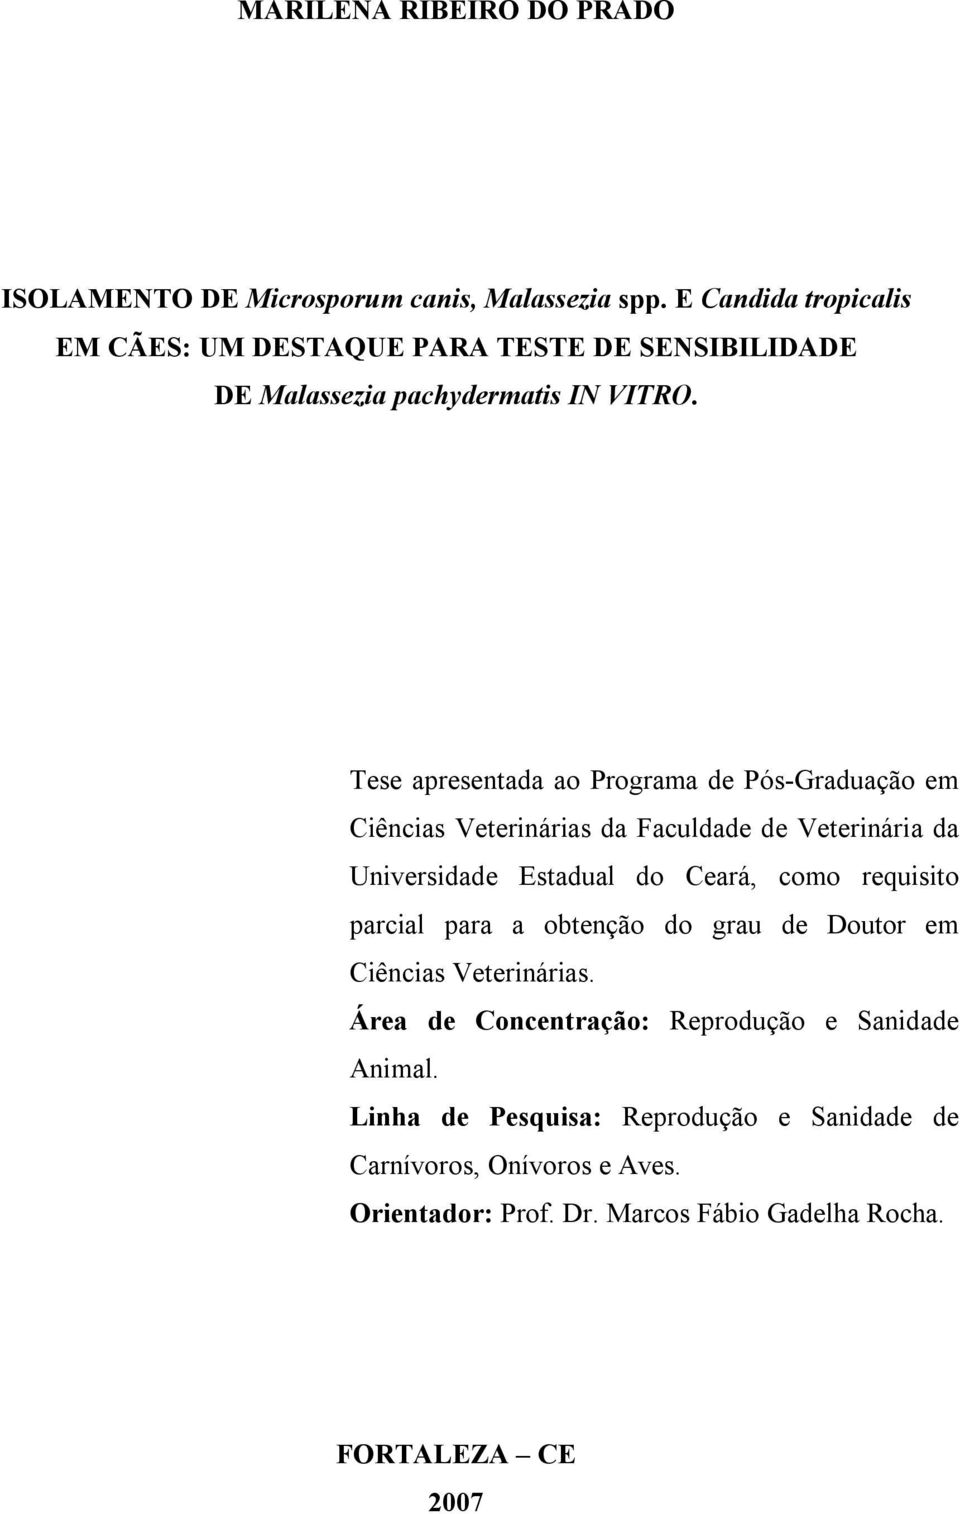 Tese apresentada ao Programa de Pós-Graduação em Ciências Veterinárias da Faculdade de Veterinária da Universidade Estadual do Ceará, como